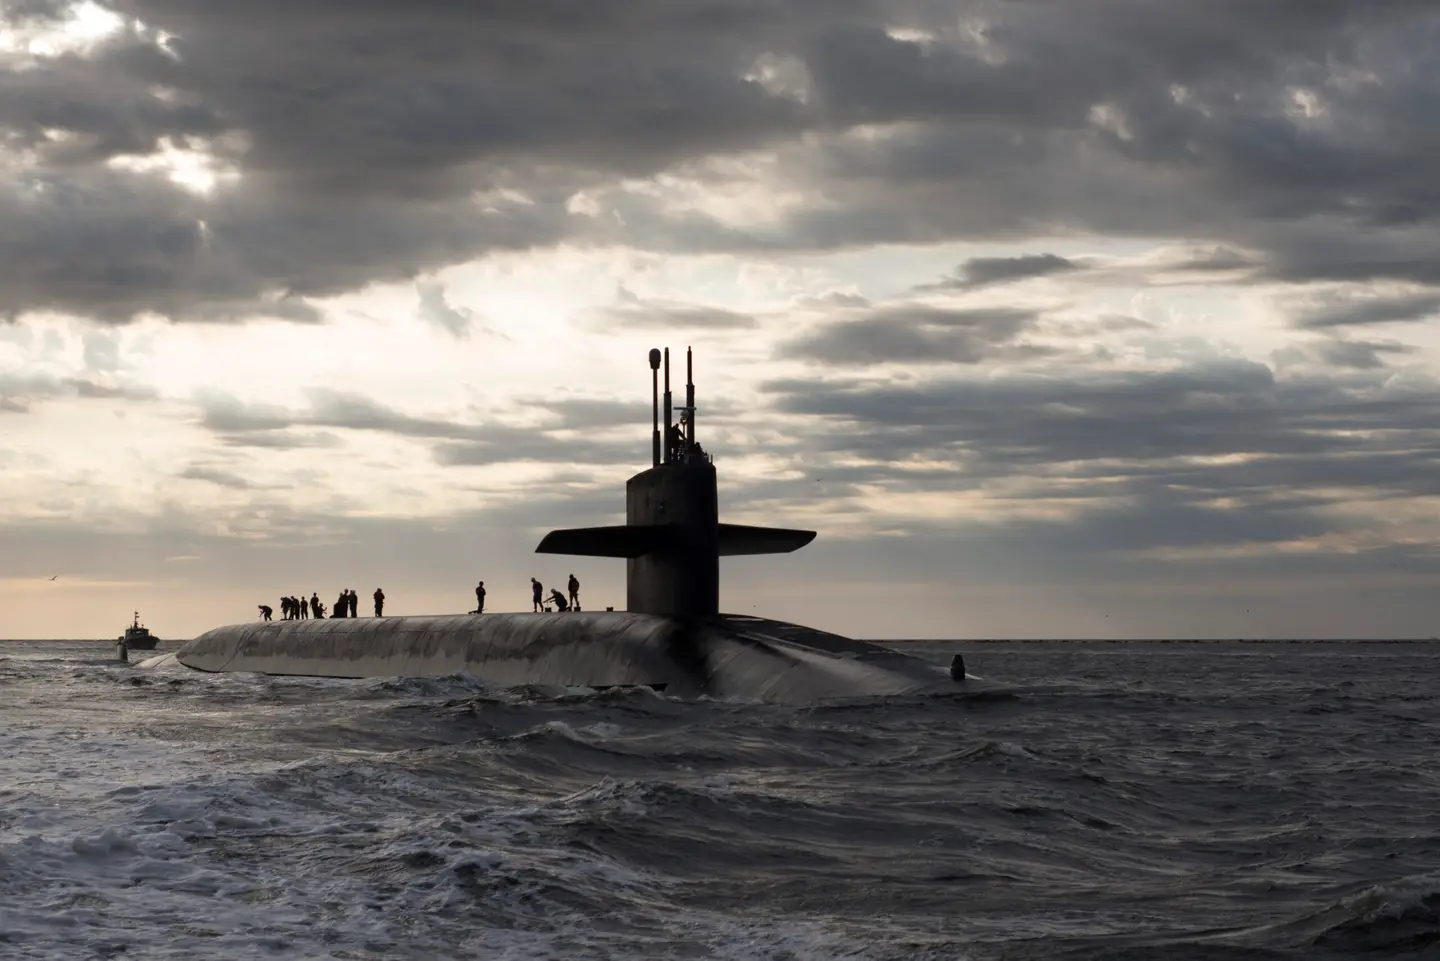 EE.UU. enviará a la República de Corea submarinos de la clase Ohio con misiles balísticos Trident II y cabezas nucleares con un alcance de lanzamiento de hasta 12.000 km.